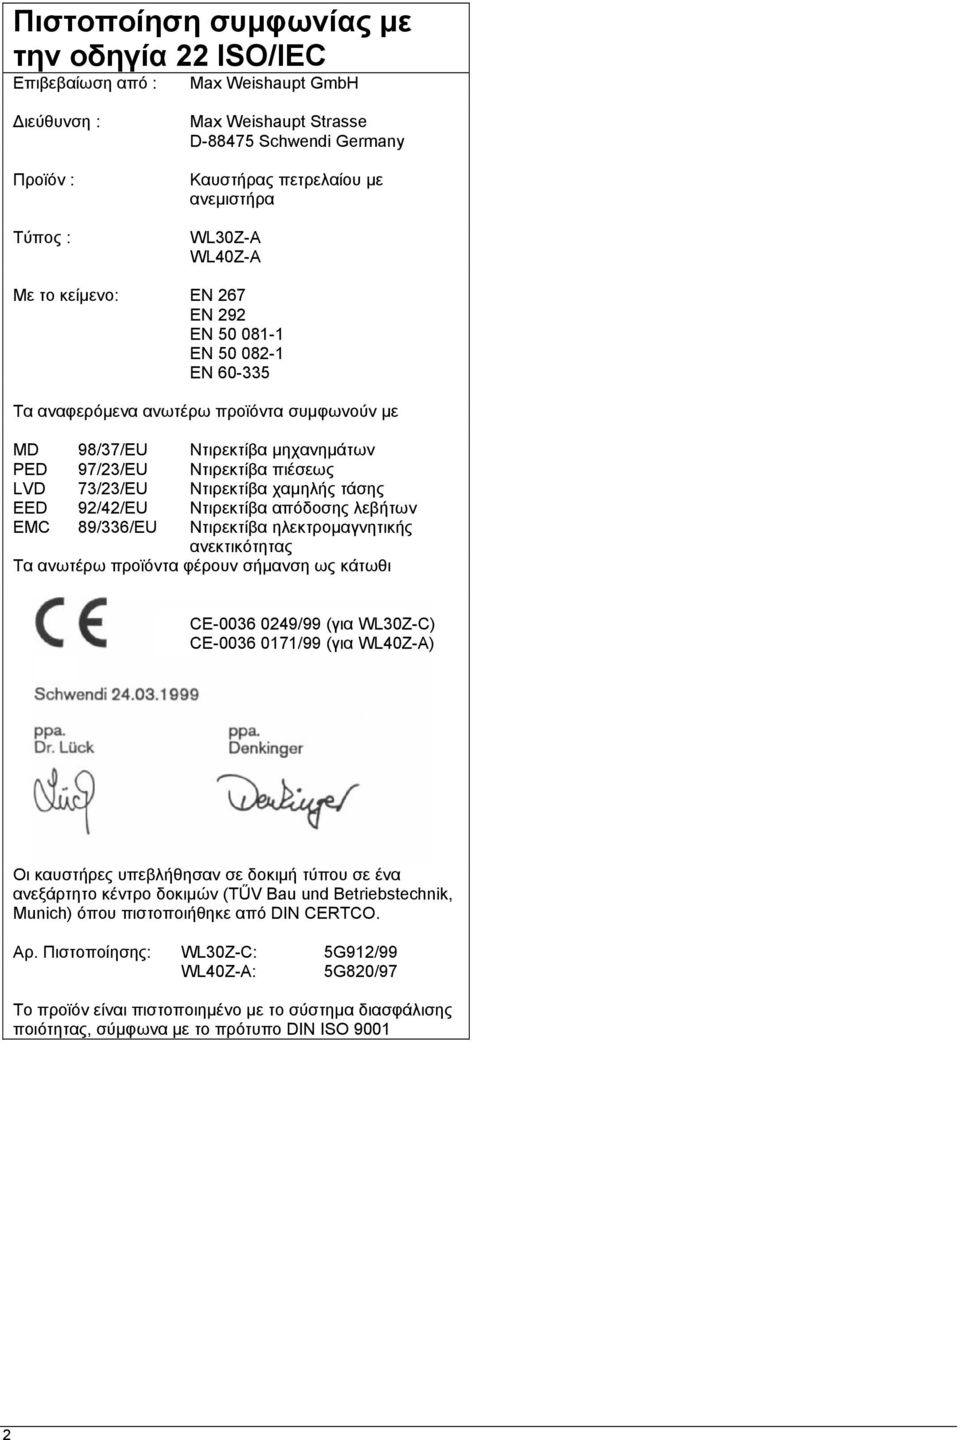 73/23/EU Ντιρεκτίβα χαµηλής τάσης EED 92/42/EU Ντιρεκτίβα απόδοσης λεβήτων EMC 89/336/EU Ντιρεκτίβα ηλεκτροµαγνητικής ανεκτικότητας Τα ανωτέρω προϊόντα φέρουν σήµανση ως κάτωθι CE-0036 0249/99 (για